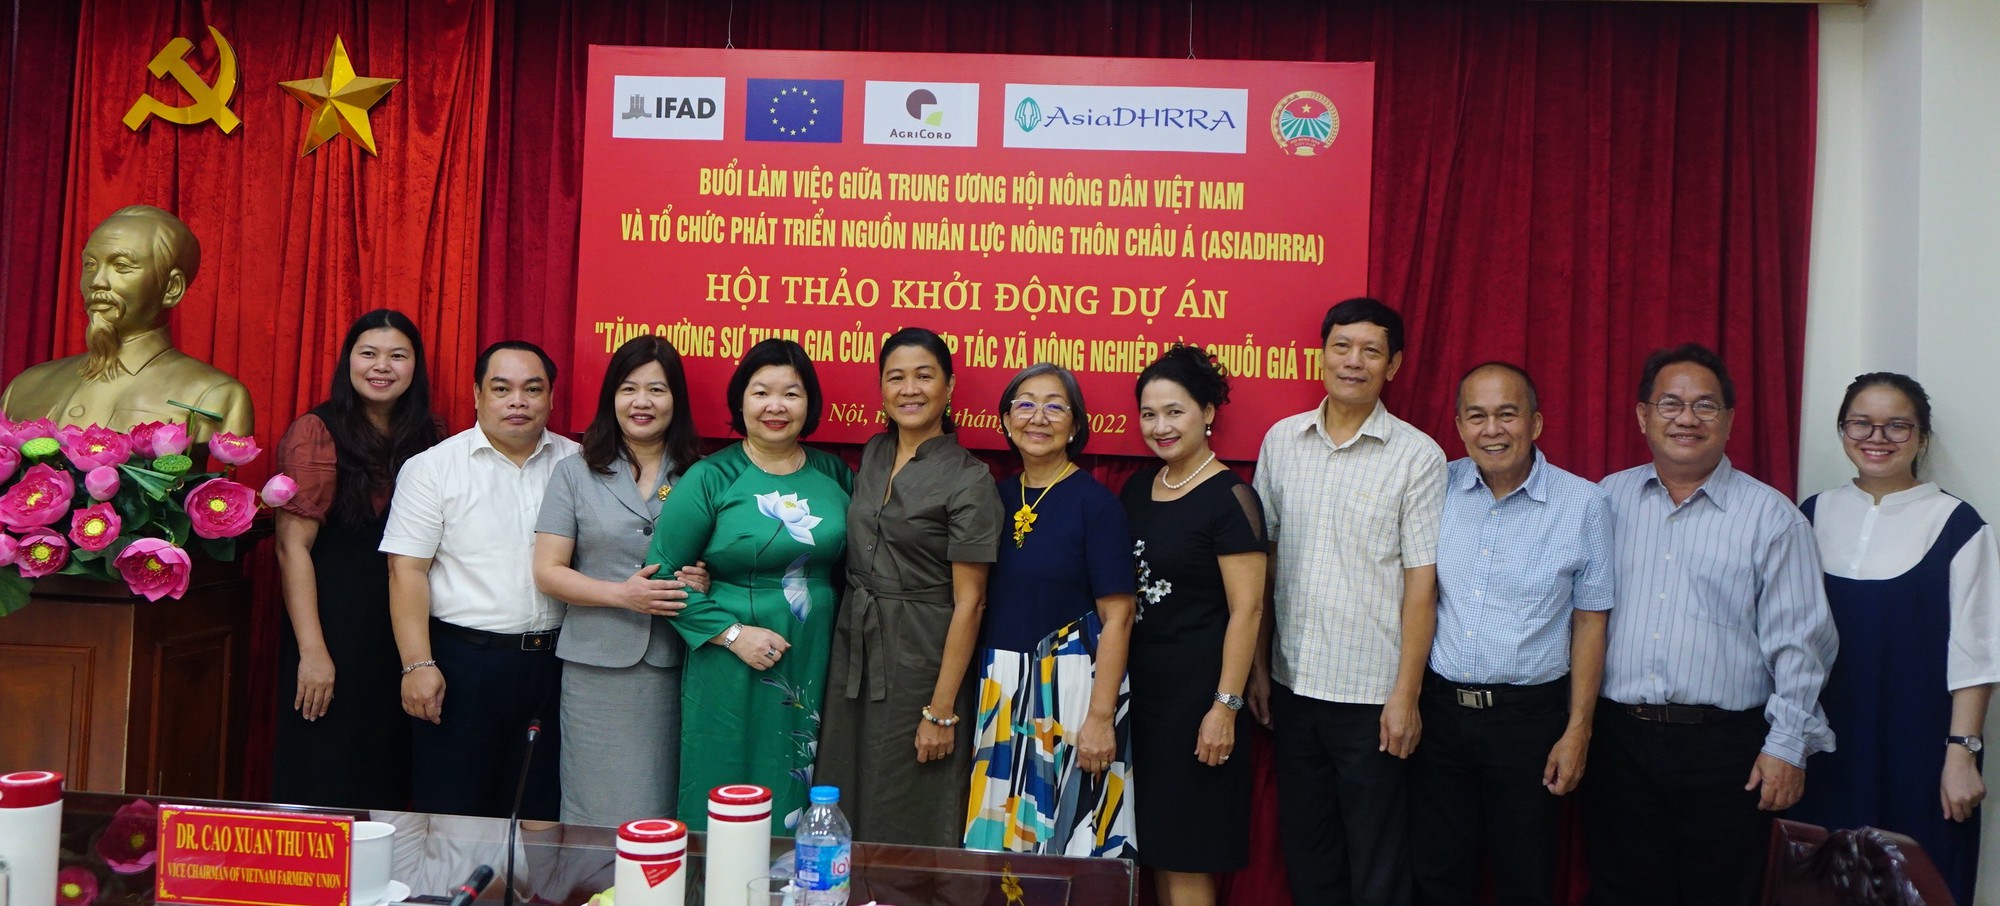 Hội Nông dân Việt Nam – AsiaDHRRA: Khởi động Dự án tăng cường sự tham gia của các HTX vào chuỗi giá trị - Ảnh 2.